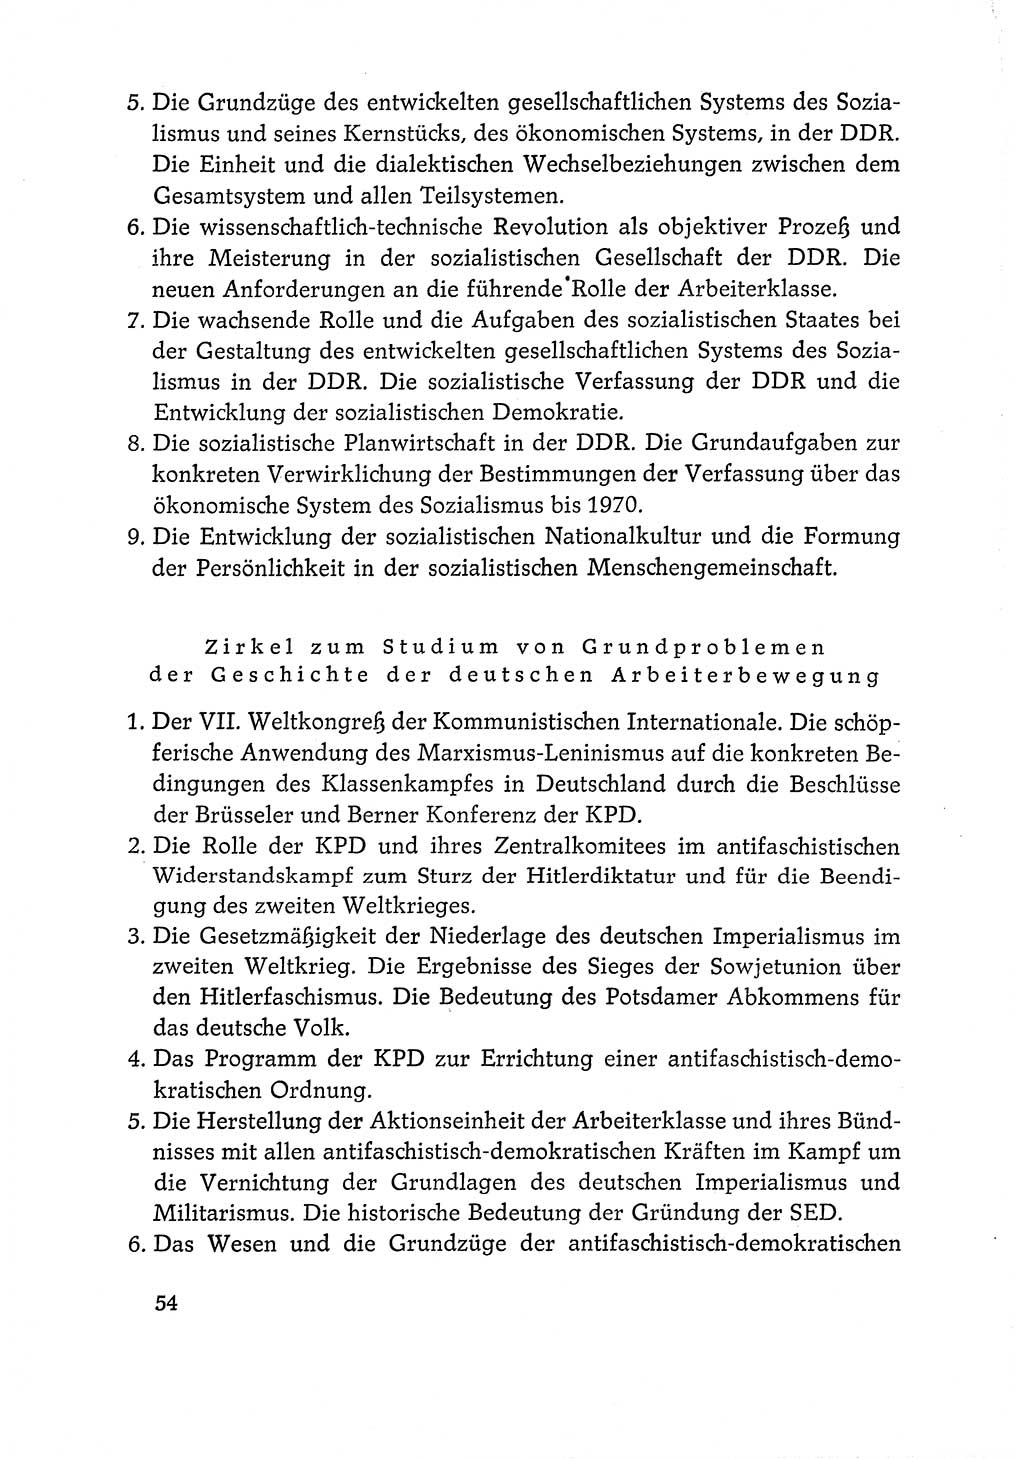 Dokumente der Sozialistischen Einheitspartei Deutschlands (SED) [Deutsche Demokratische Republik (DDR)] 1968-1969, Seite 54 (Dok. SED DDR 1968-1969, S. 54)